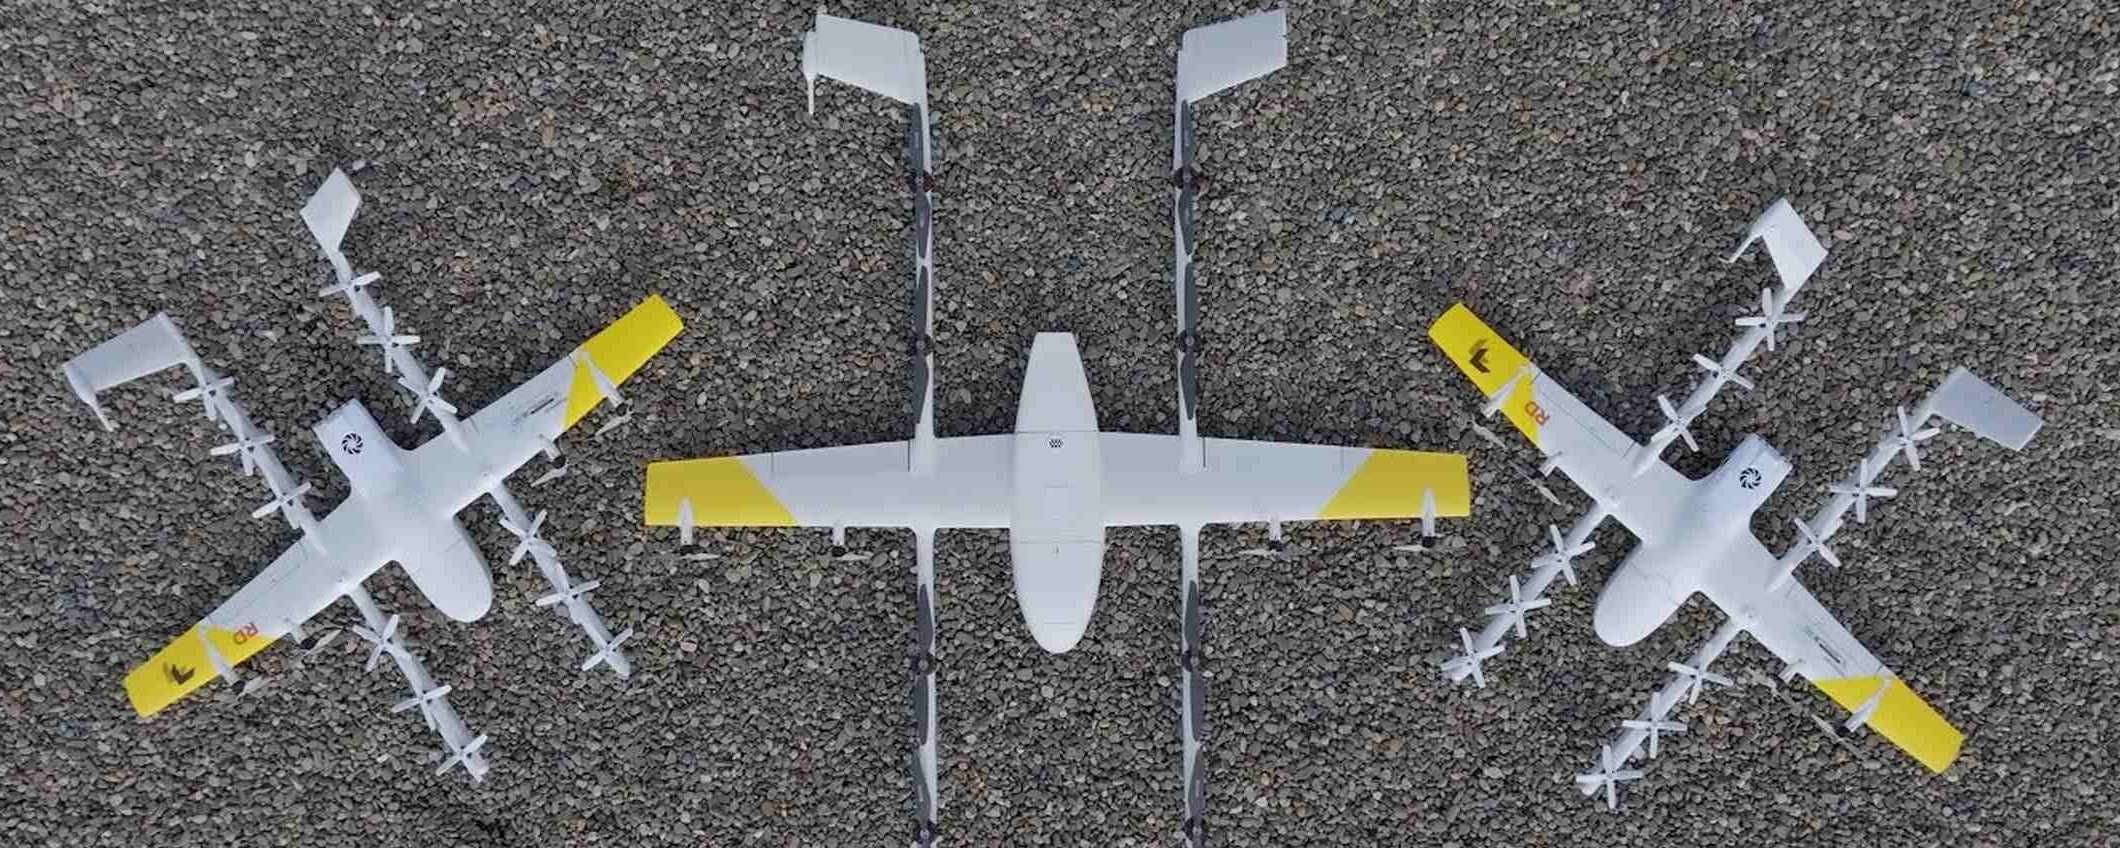 Wing aggiunge un drone più grande alla sua flotta